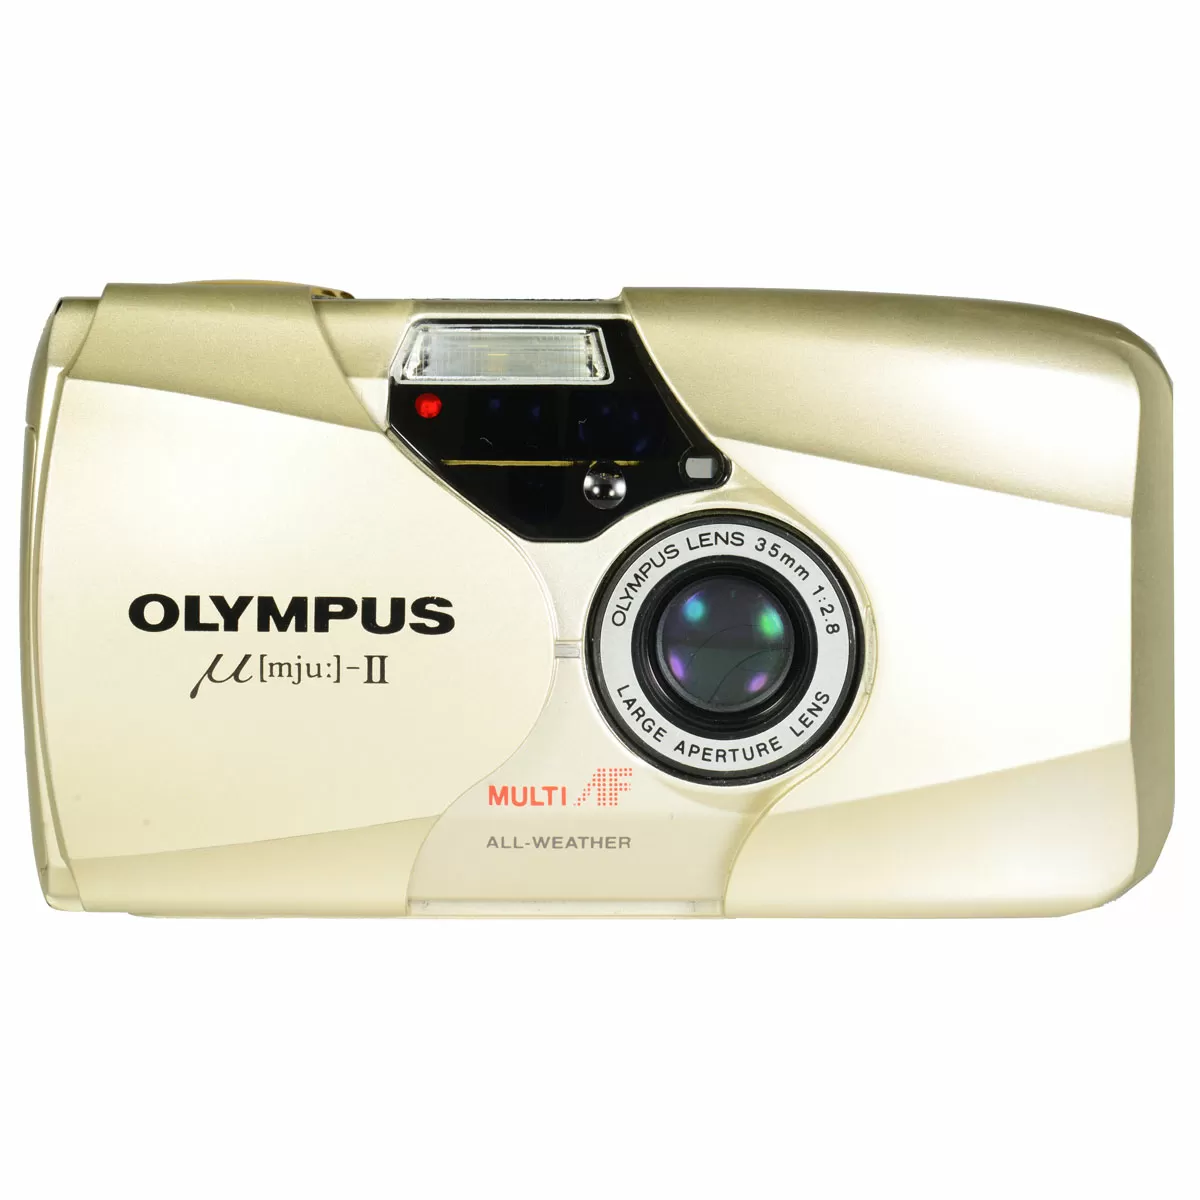 オリンパス OLYMPUS ミュー μ [mju:] II 170VF - フィルムカメラ